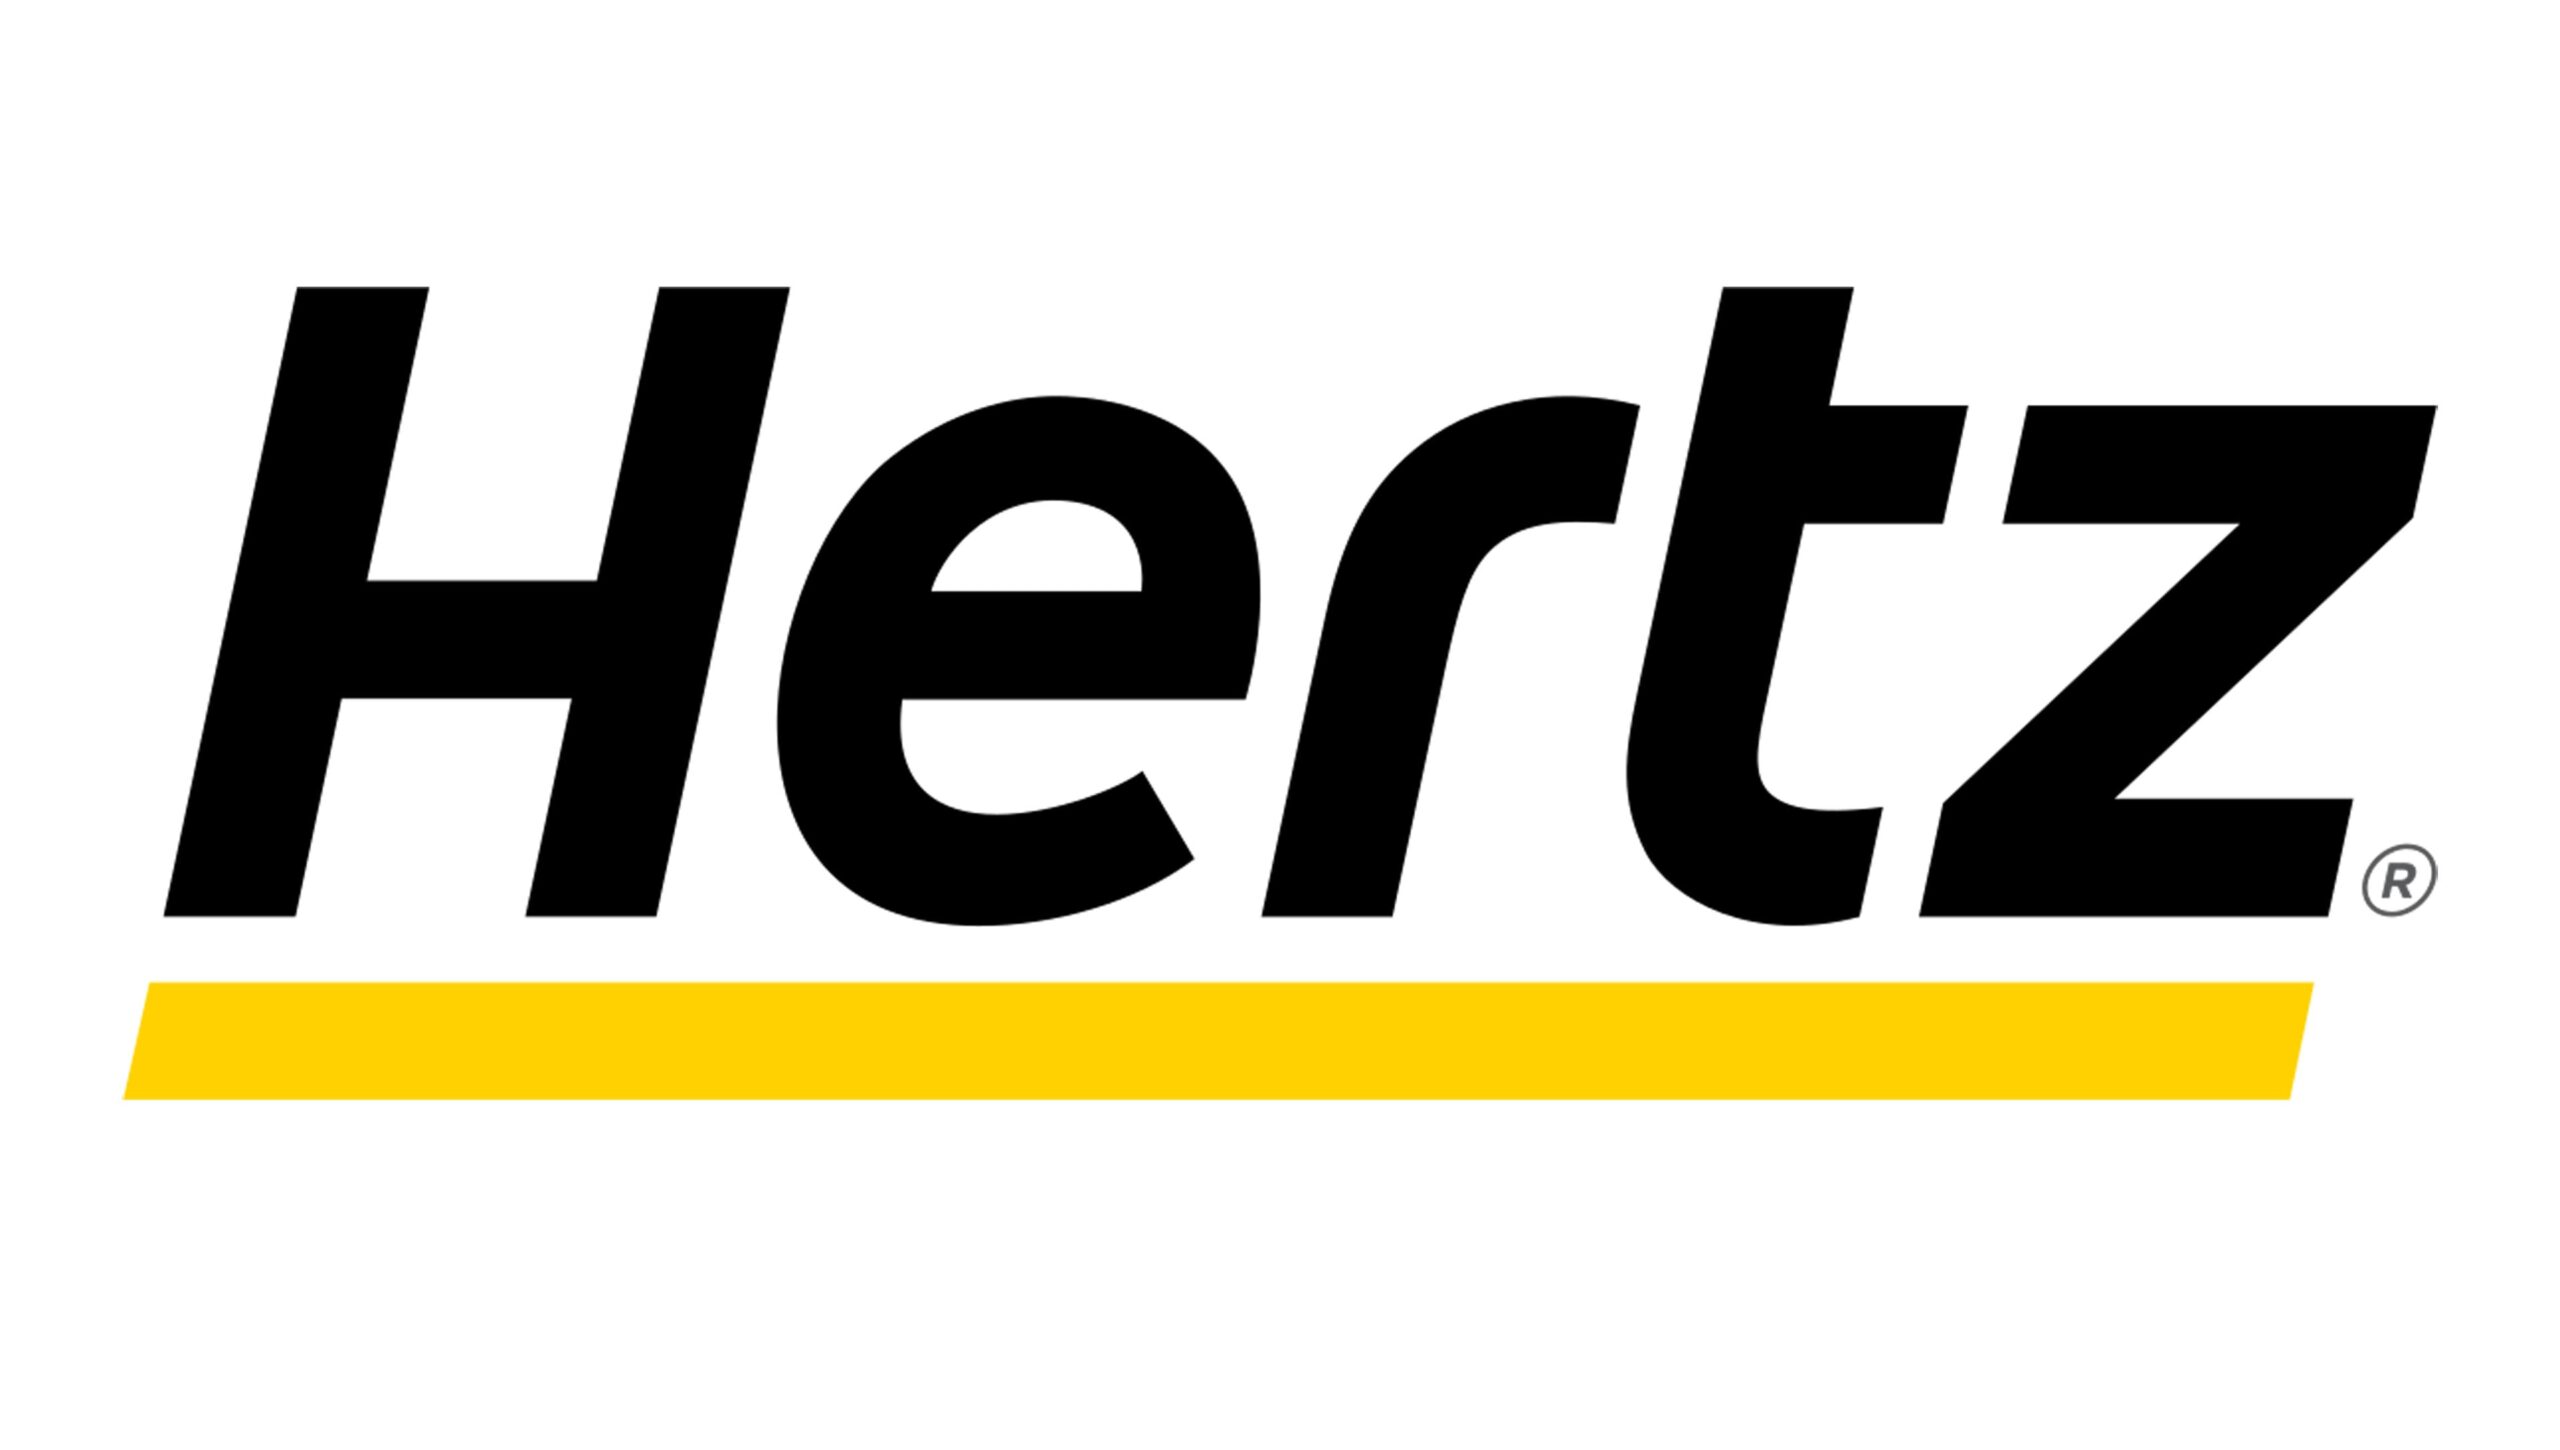 Alquiler de Autos con Hertz en Leticia